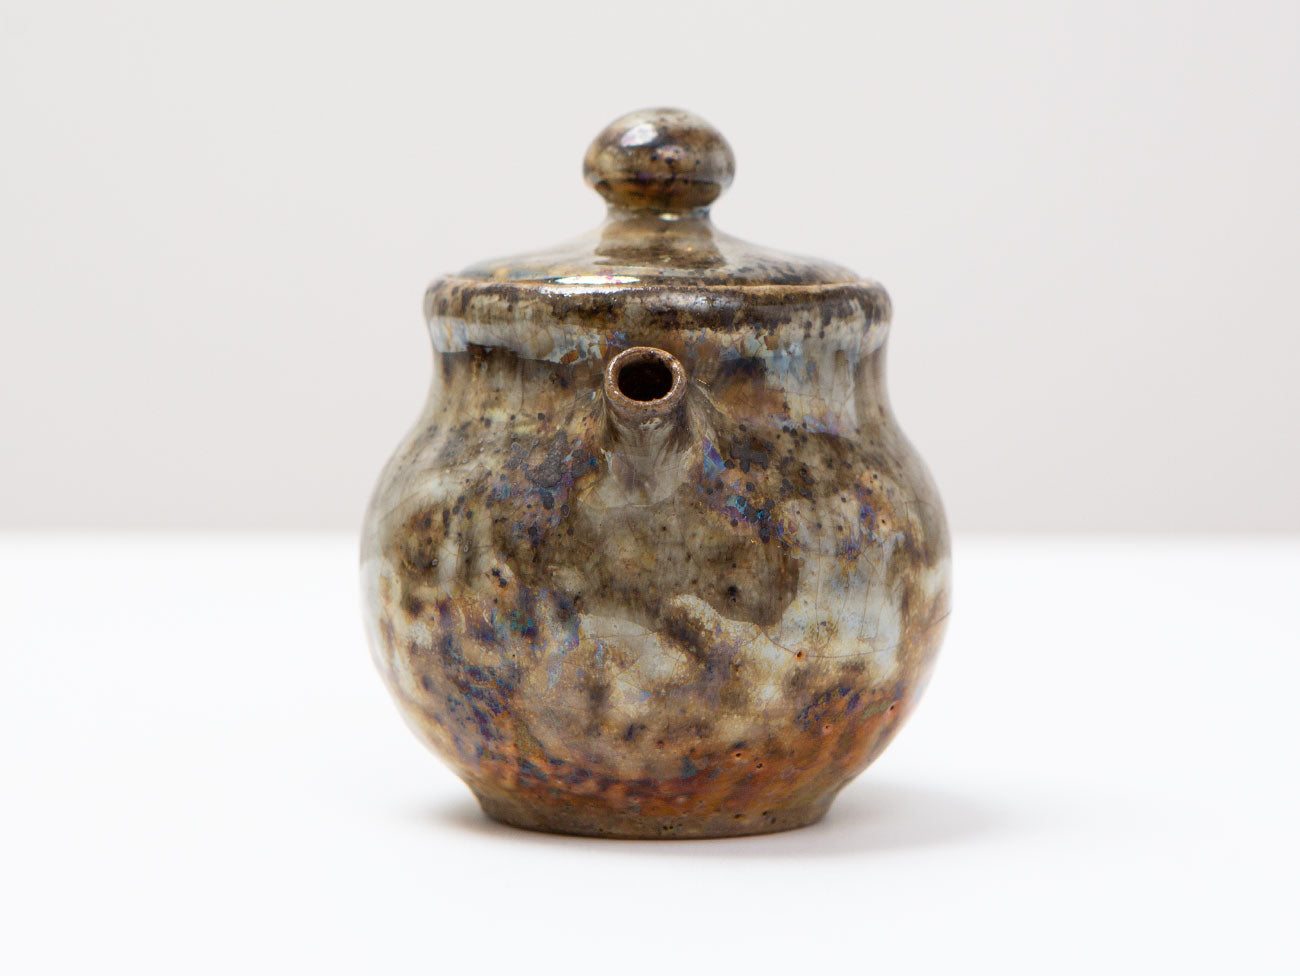 Shino Gold Wood-fired Teapot, Zhang Yun Cheng